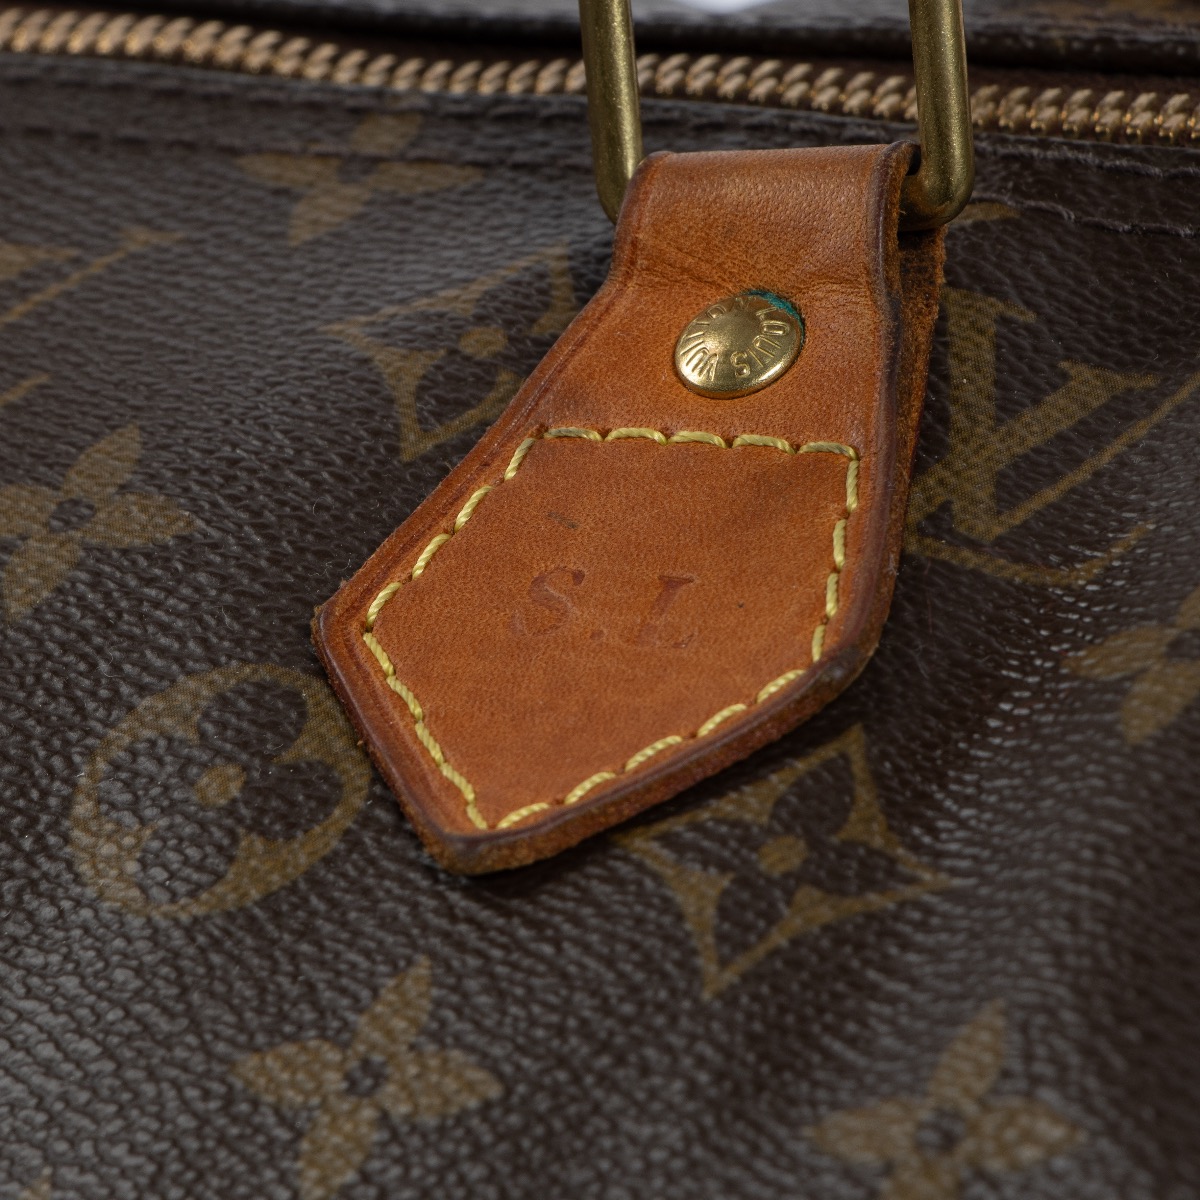 Louis Vuitton Monogram Speedy 40 Top Handle Bag ○ Labellov ○ Buy